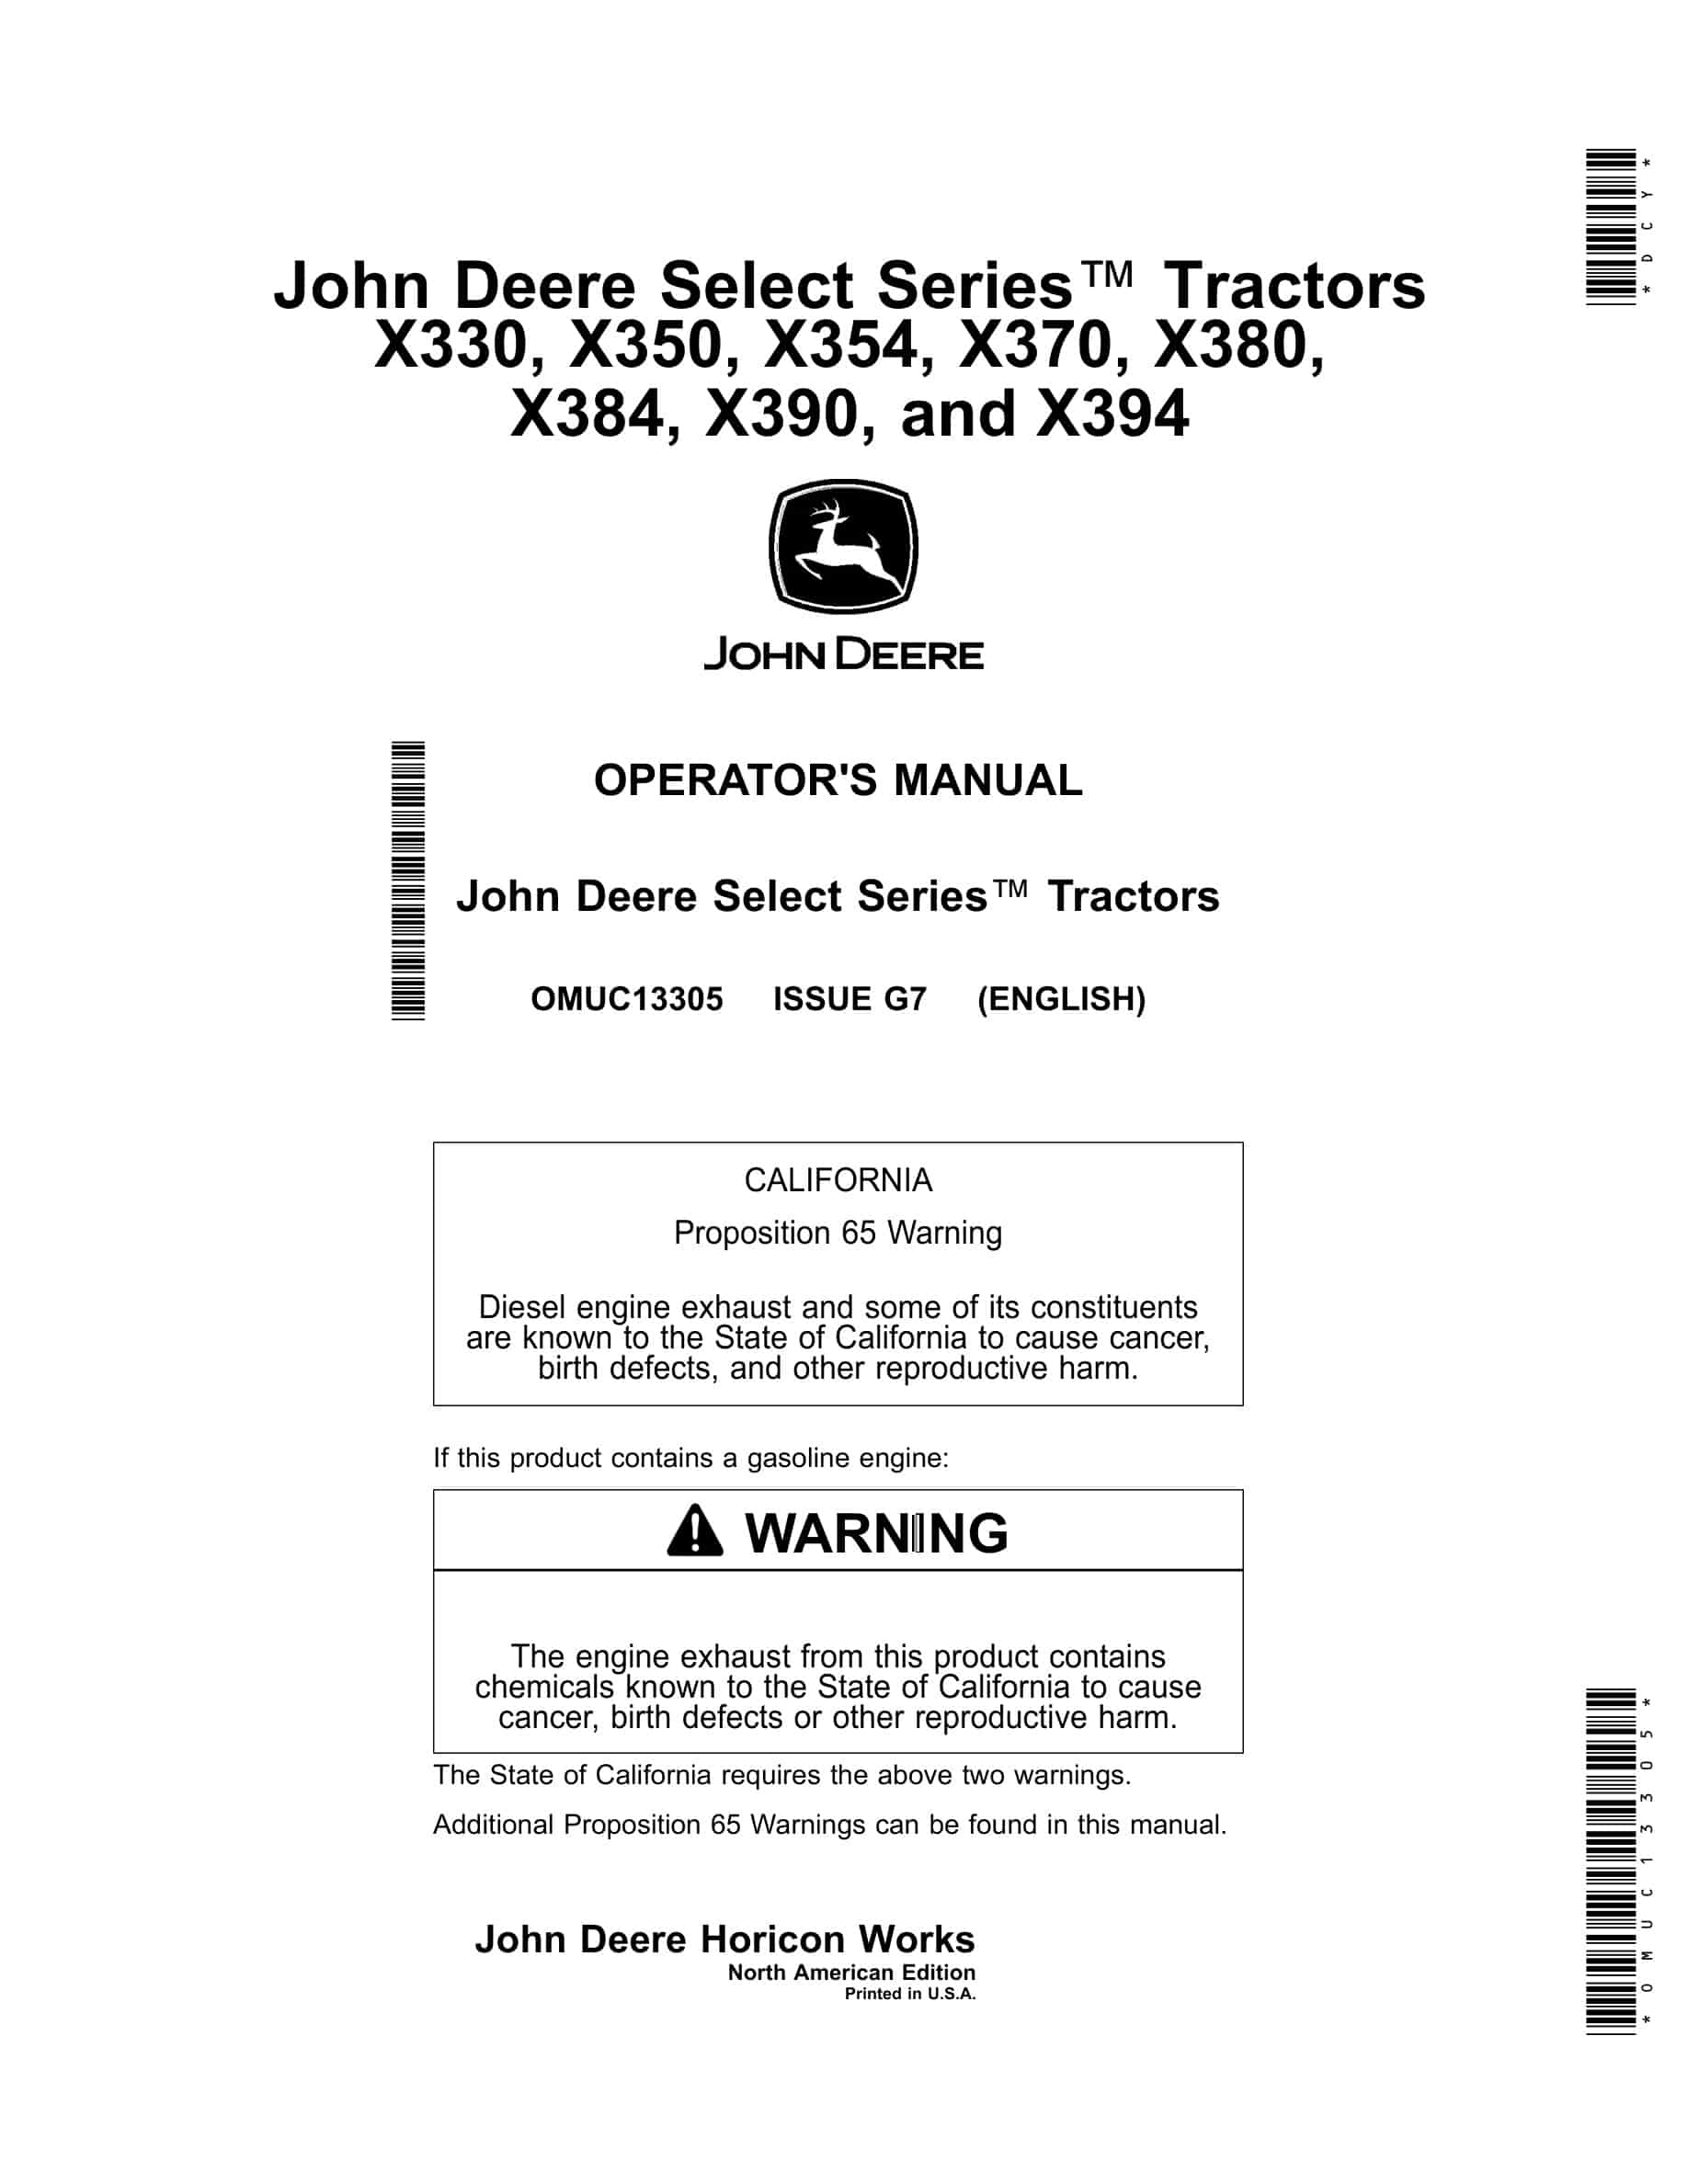 John Deere X330, X350, X354, X370, X380, X384, X390, and X394 Tractor Operator Manual OMUC13305-1